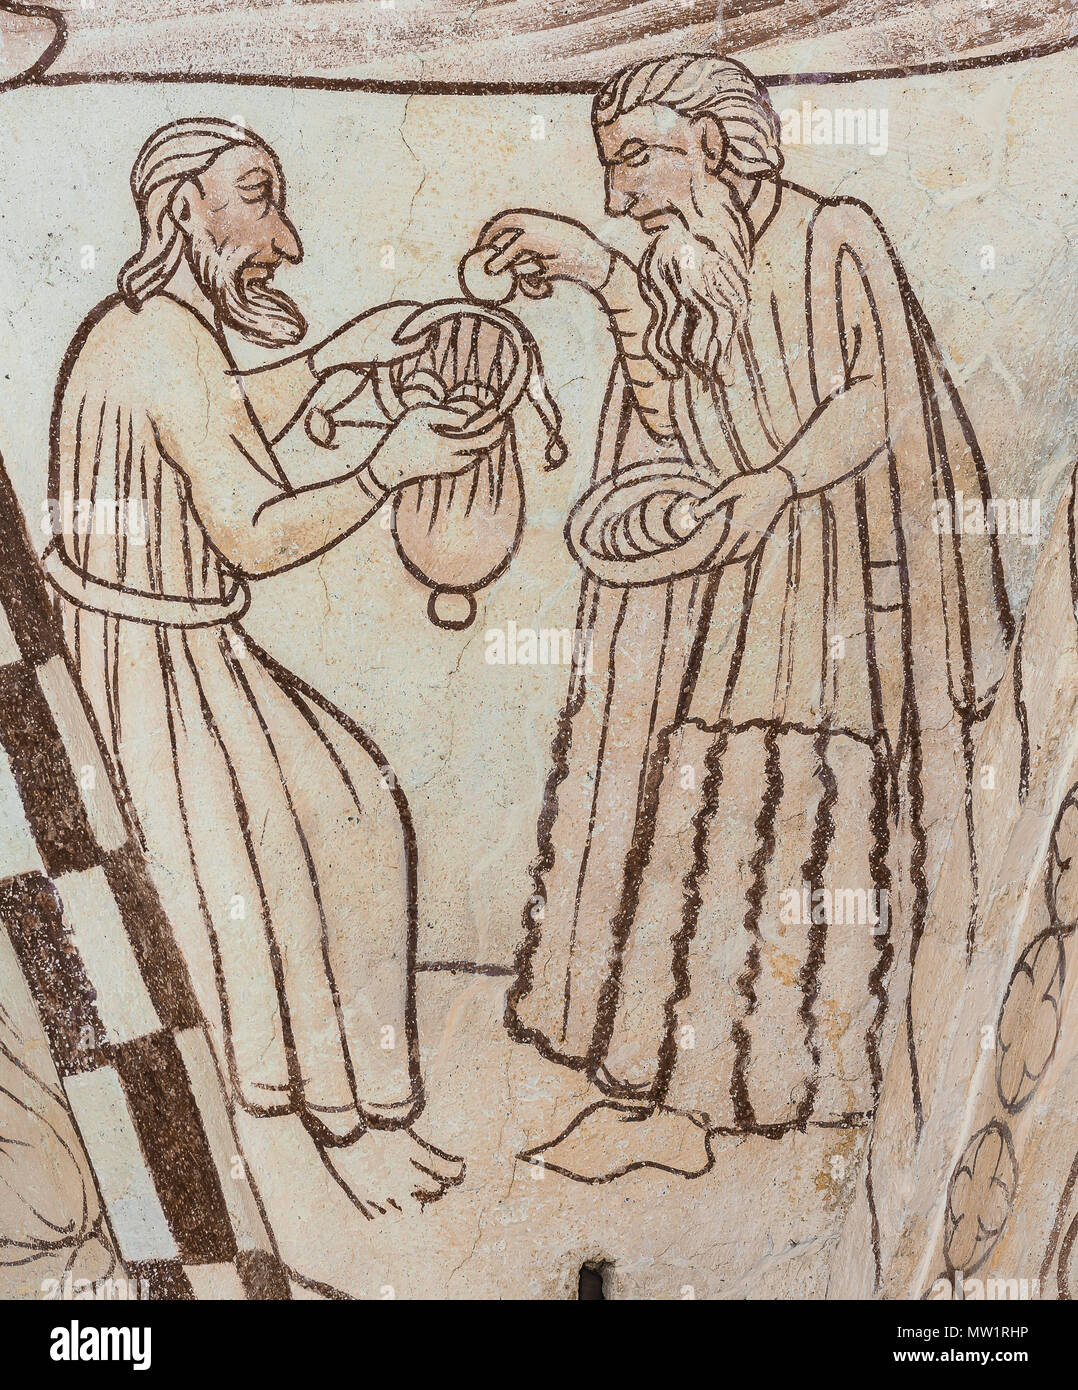 Trente pièces d'argent donné à Judas Iscariot par un prêtre juif. Une fresque médiévale dans Bronnestad gothique de l'église, la Suède, le 11 mai, 2018 Banque D'Images